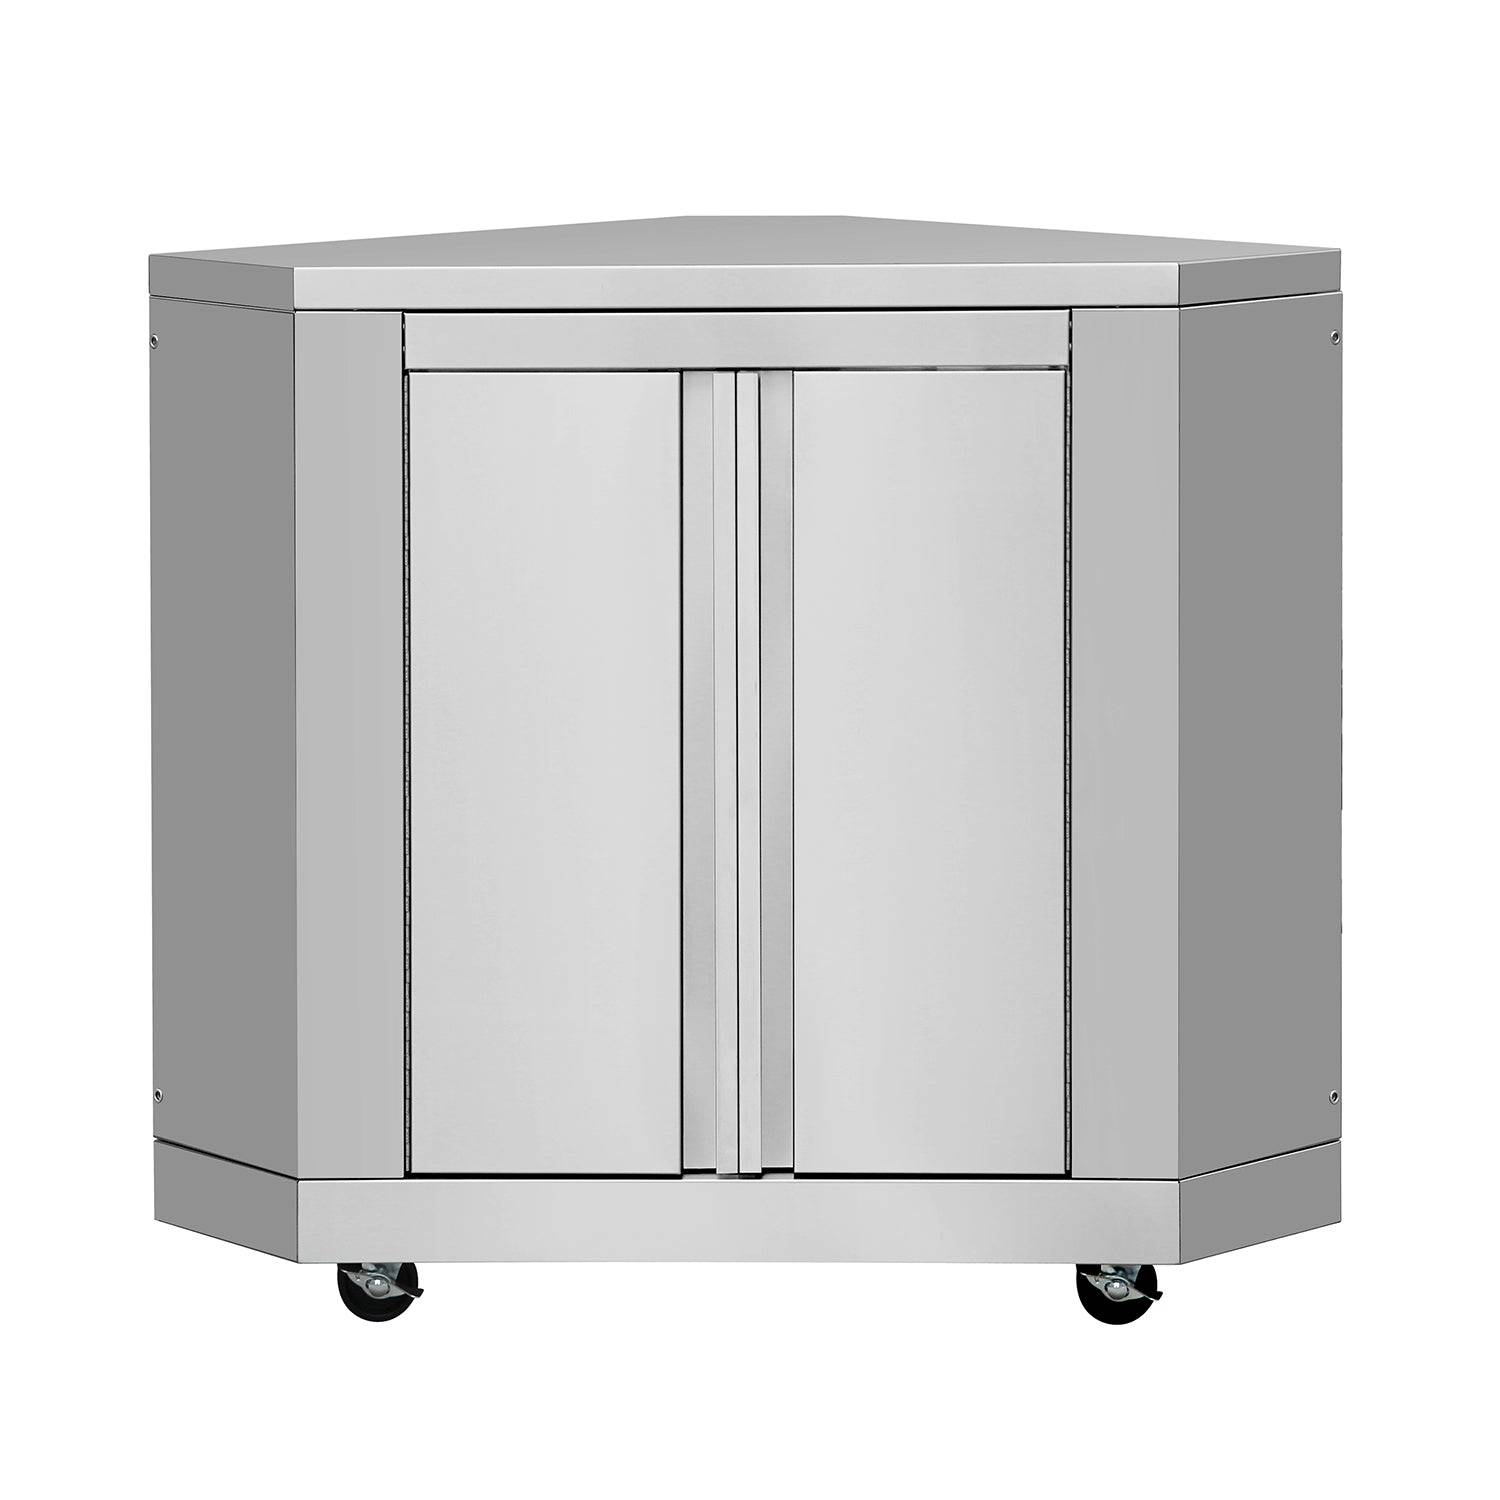 Fobest Outdoor Kitchen Stainless Steel Corner Cabinet - Cabinet-Fobest Appliance